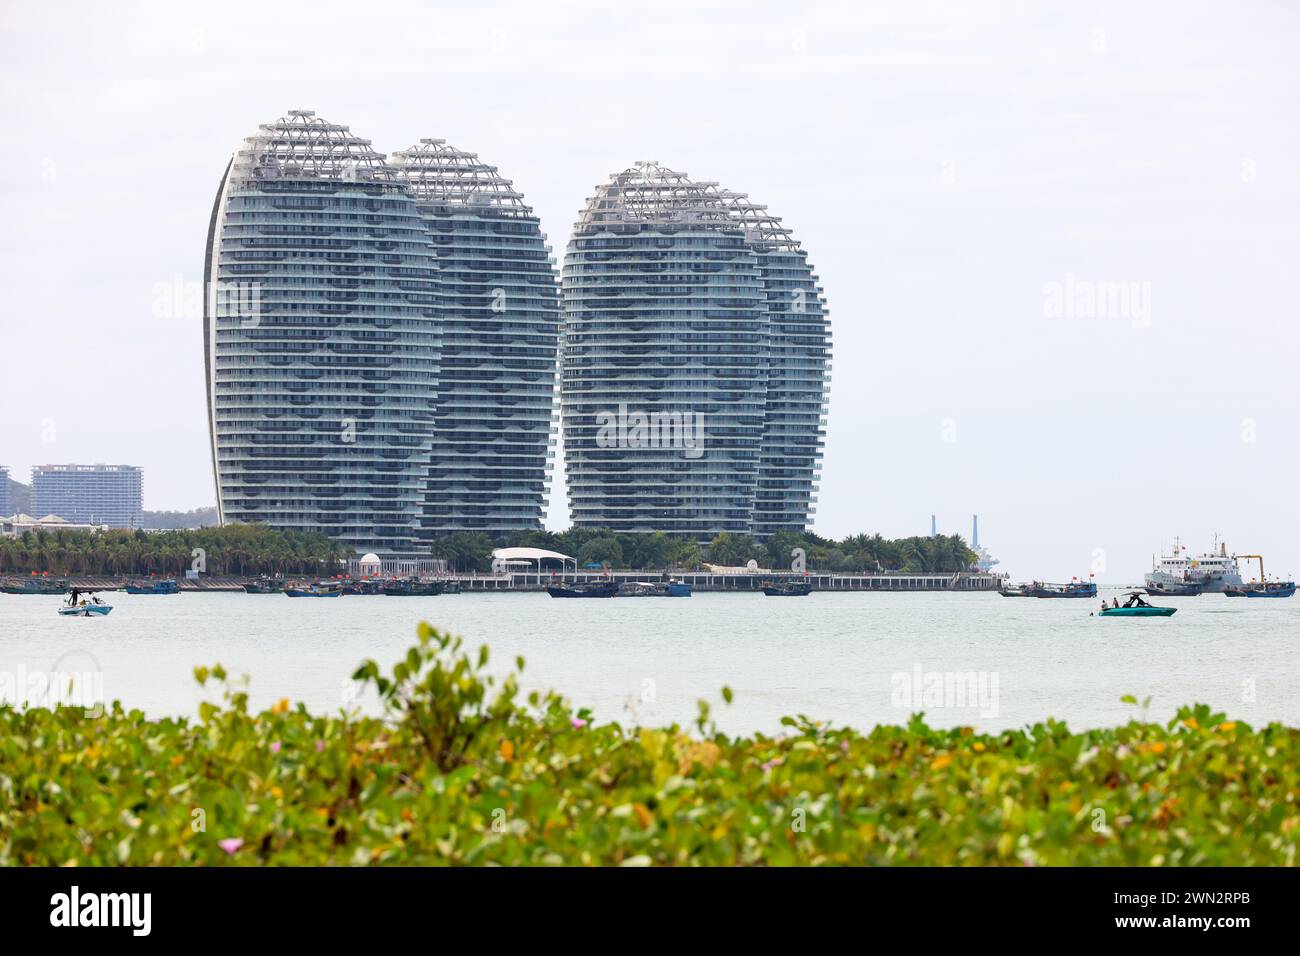 Vue des gratte-ciel sur l'île artificielle de Phoenix à Sanya, Chine Banque D'Images